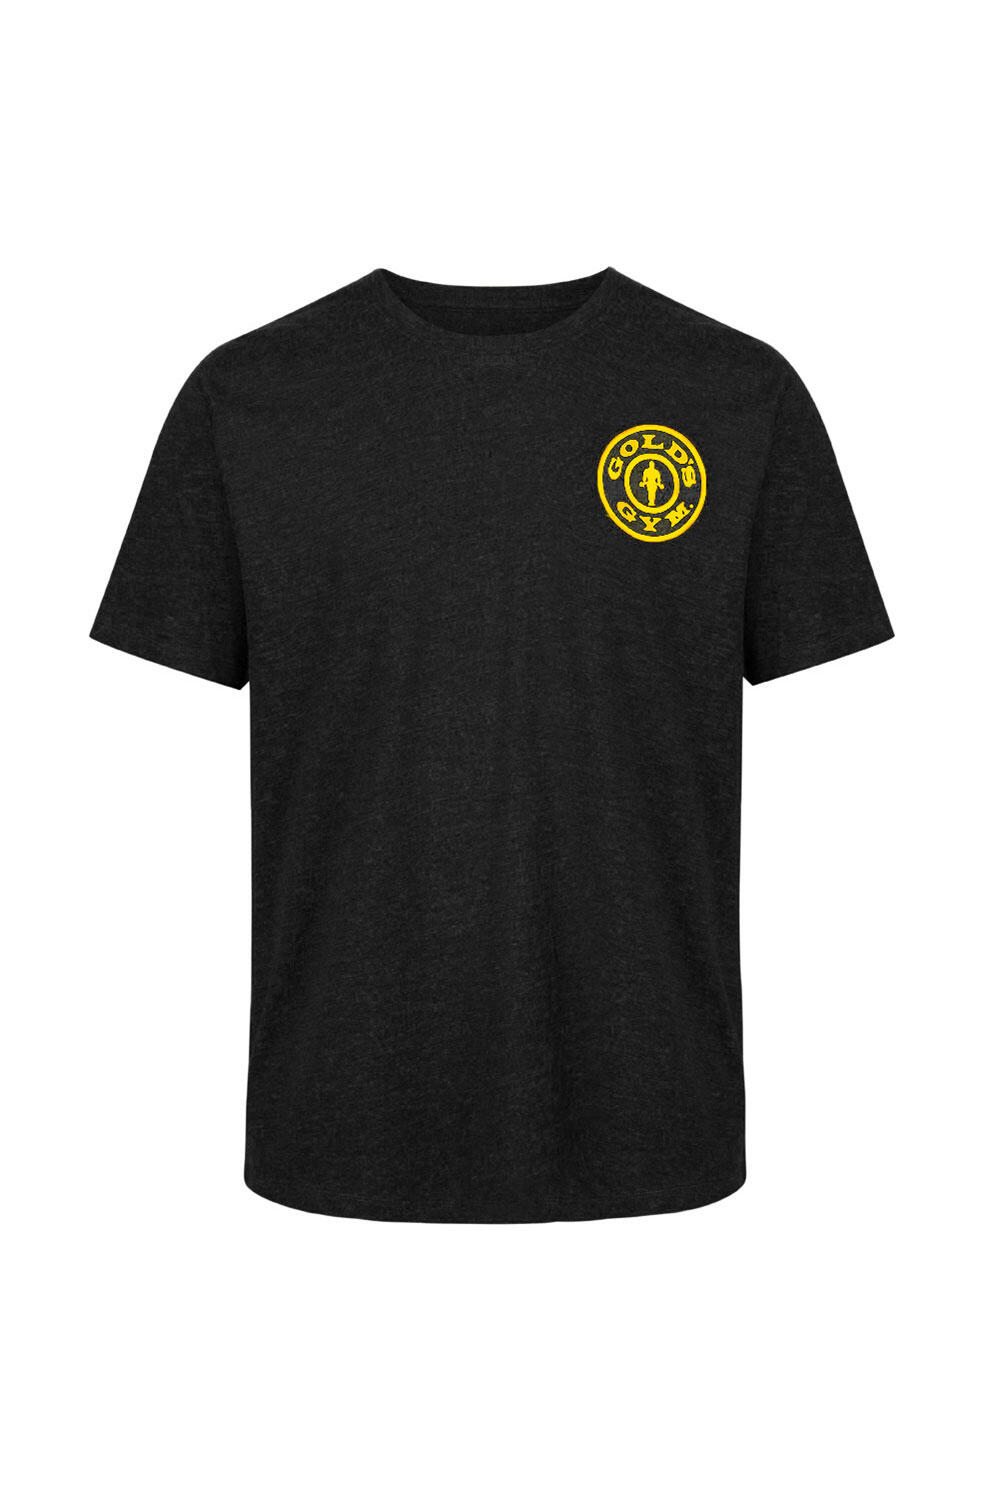 Men's Gold's Gym Left Chest Logo T-Shirt 2/4